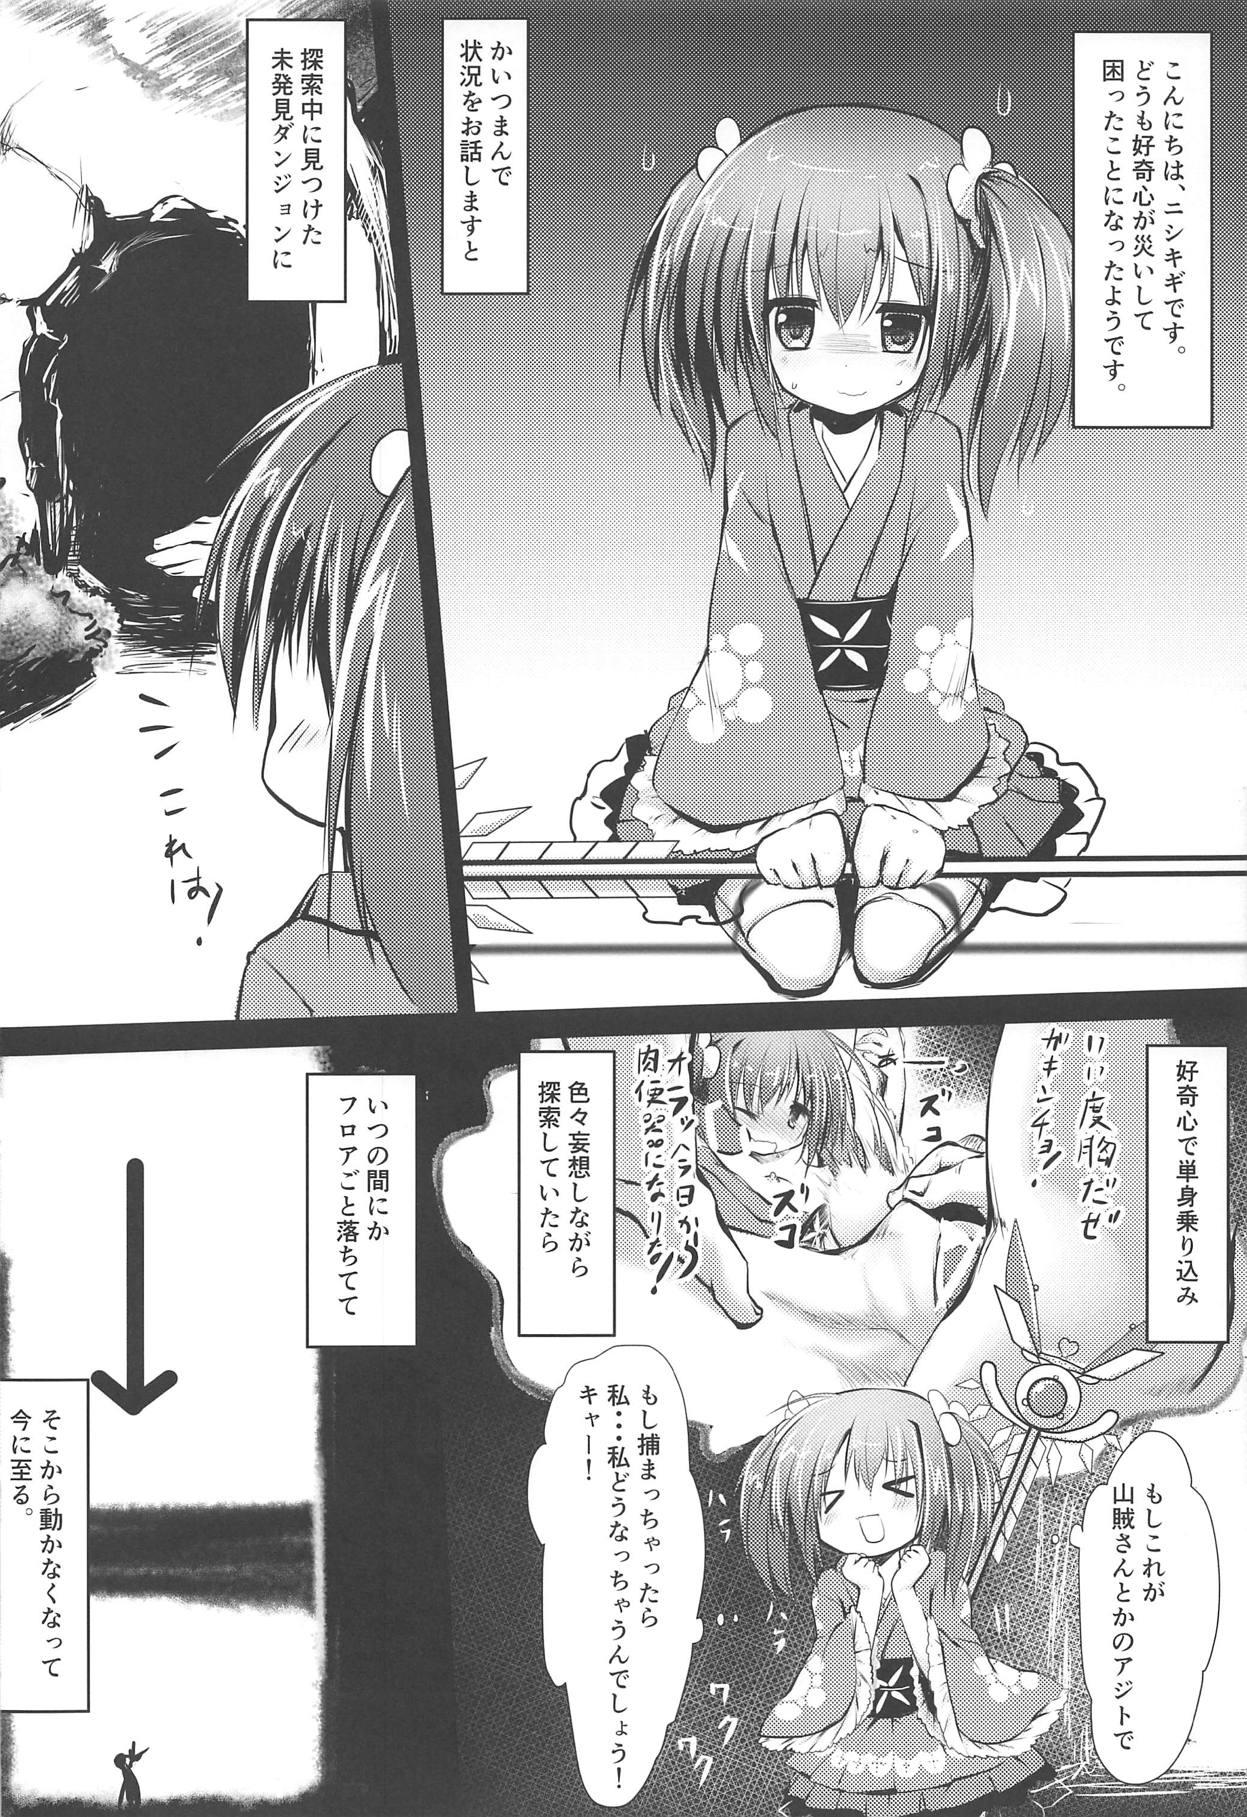 Gay Outdoor Nishikigi VS Ero Trap D - Flower knight girl Comendo - Page 3